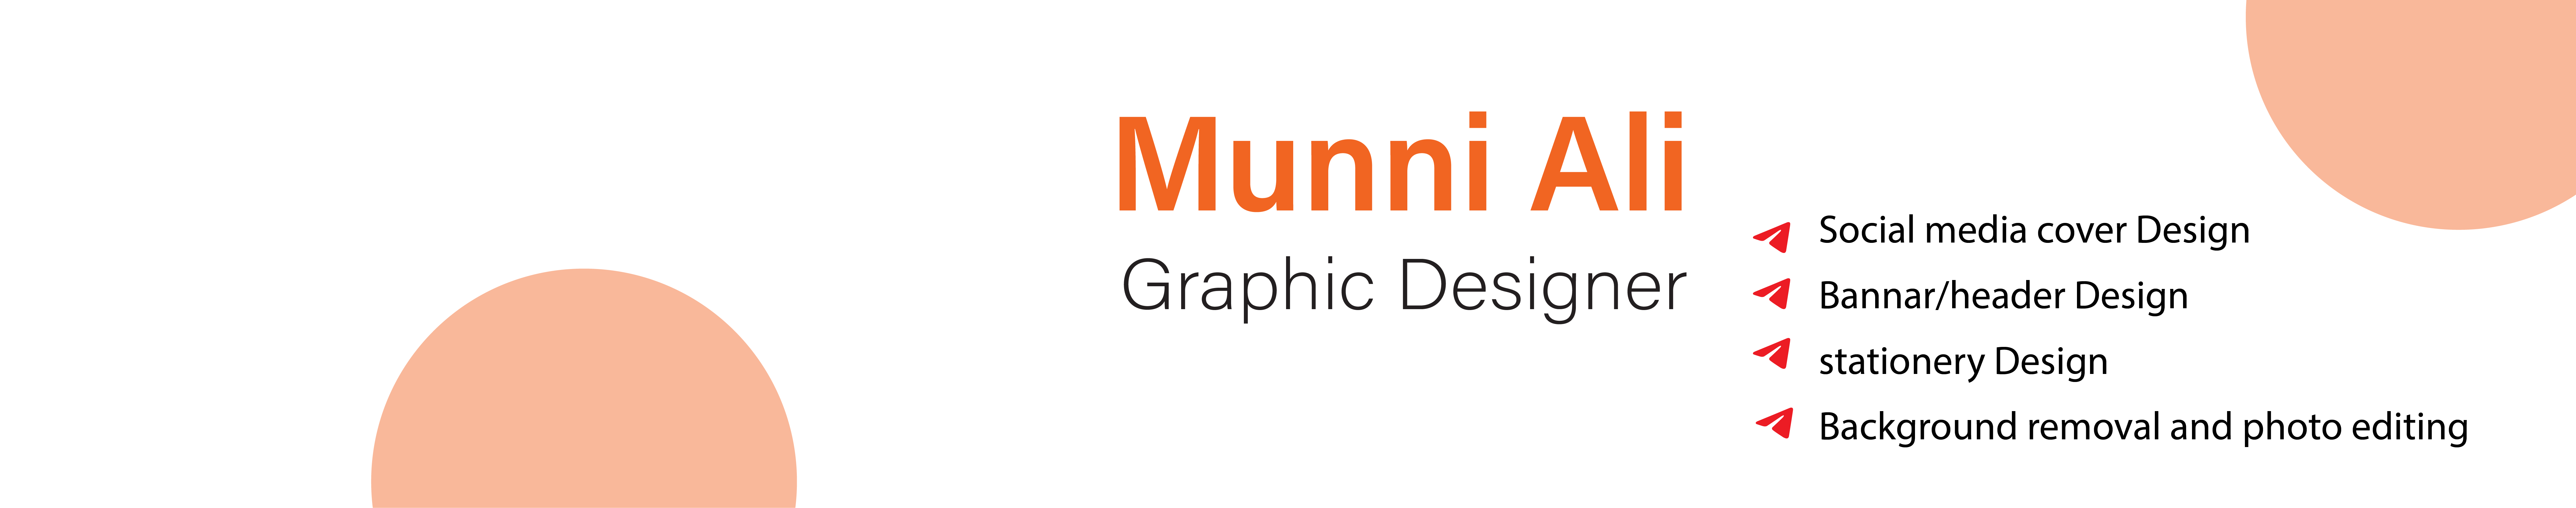 Banner de perfil de Munni Ali ✪